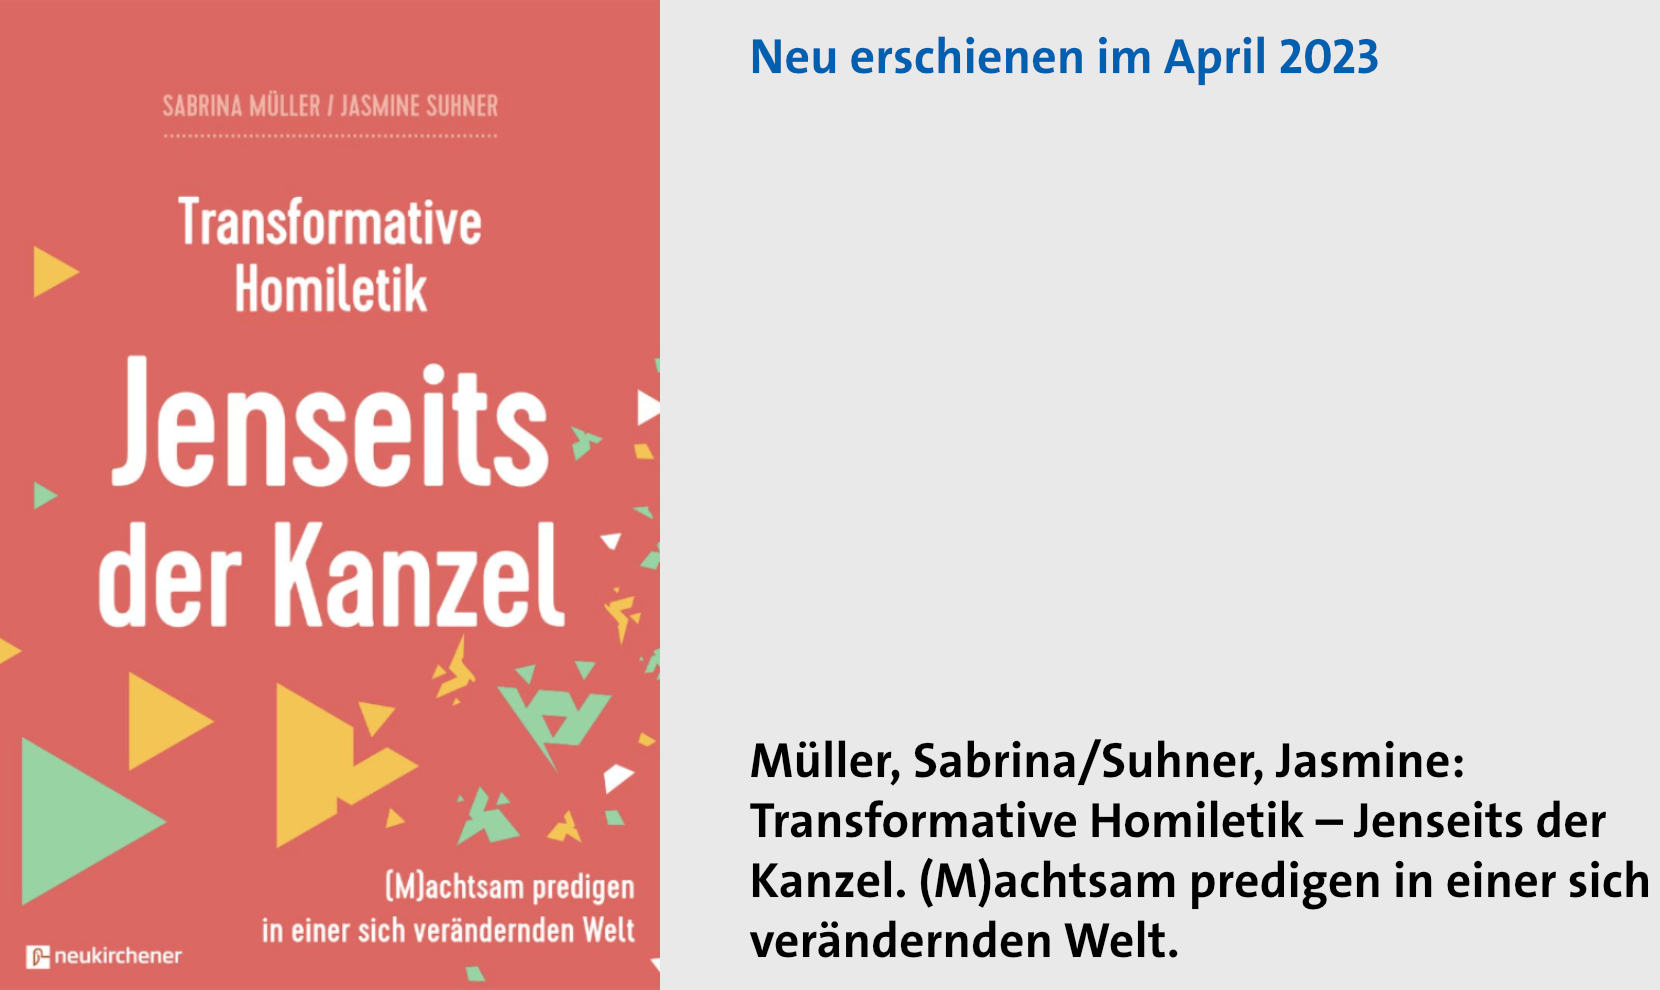 Müller/Suhner: Jenseits der Kanzel (Slideshow)